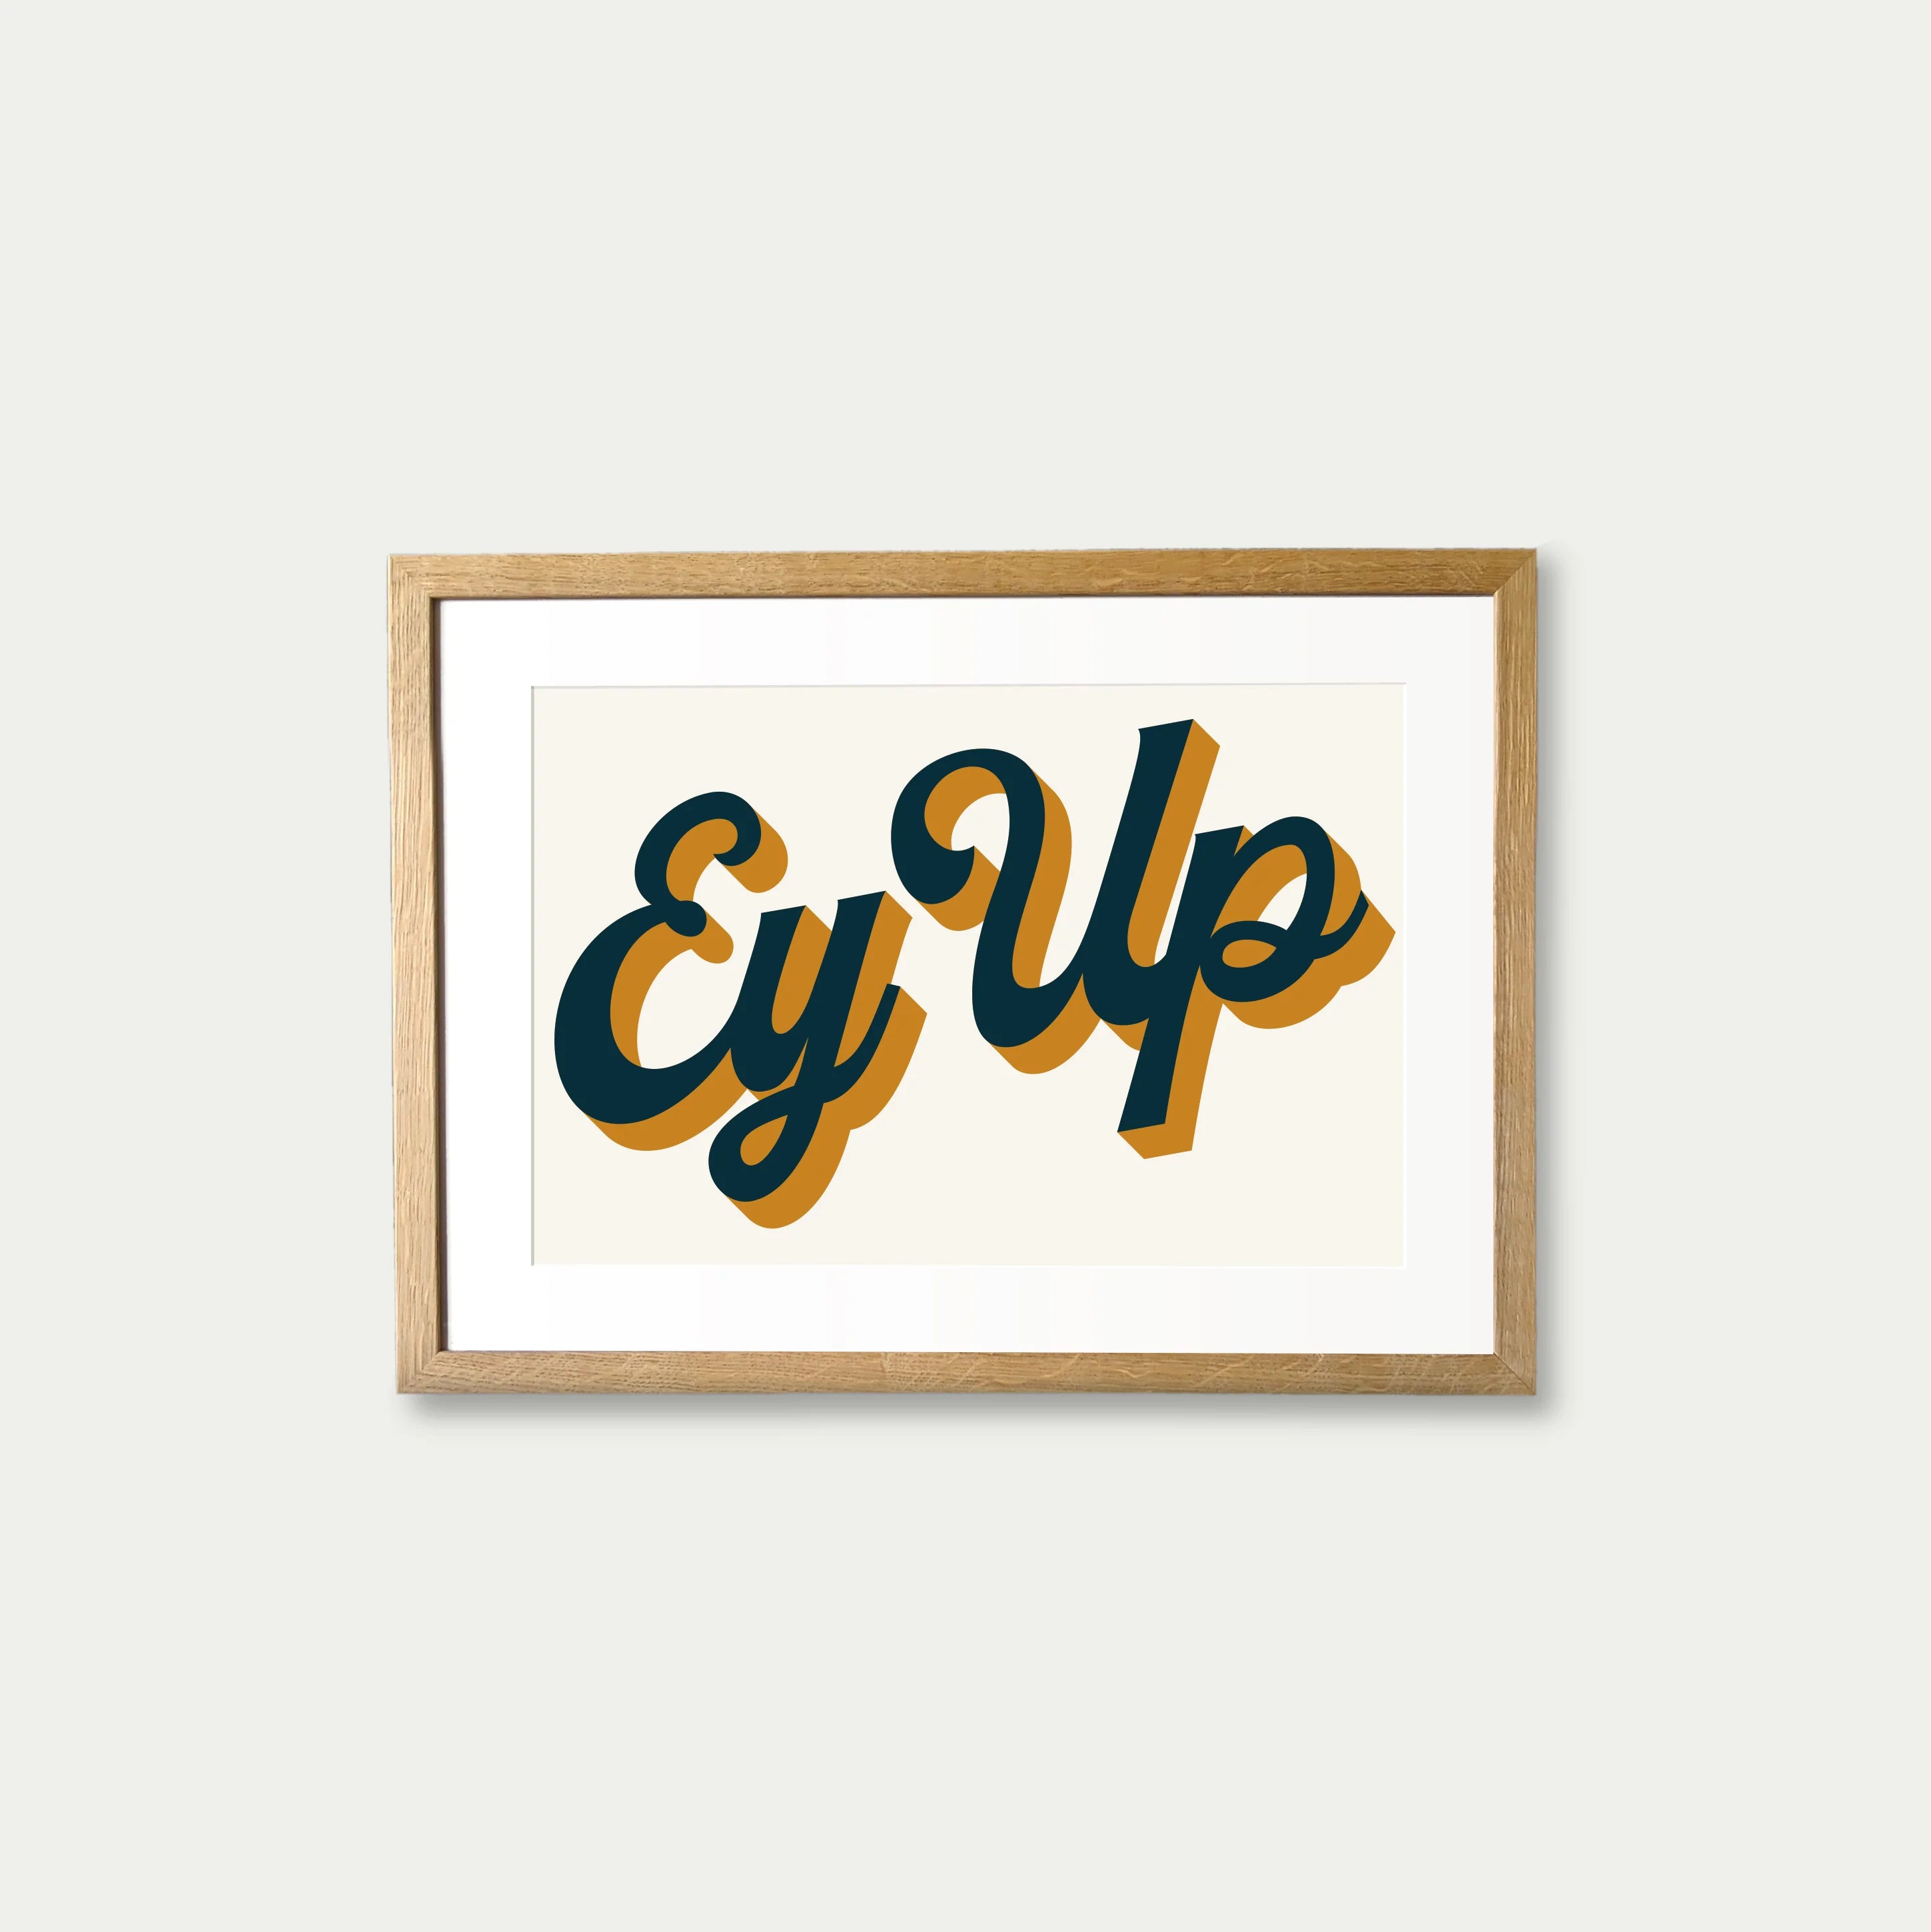 ‘Ey Up’ Framed Print